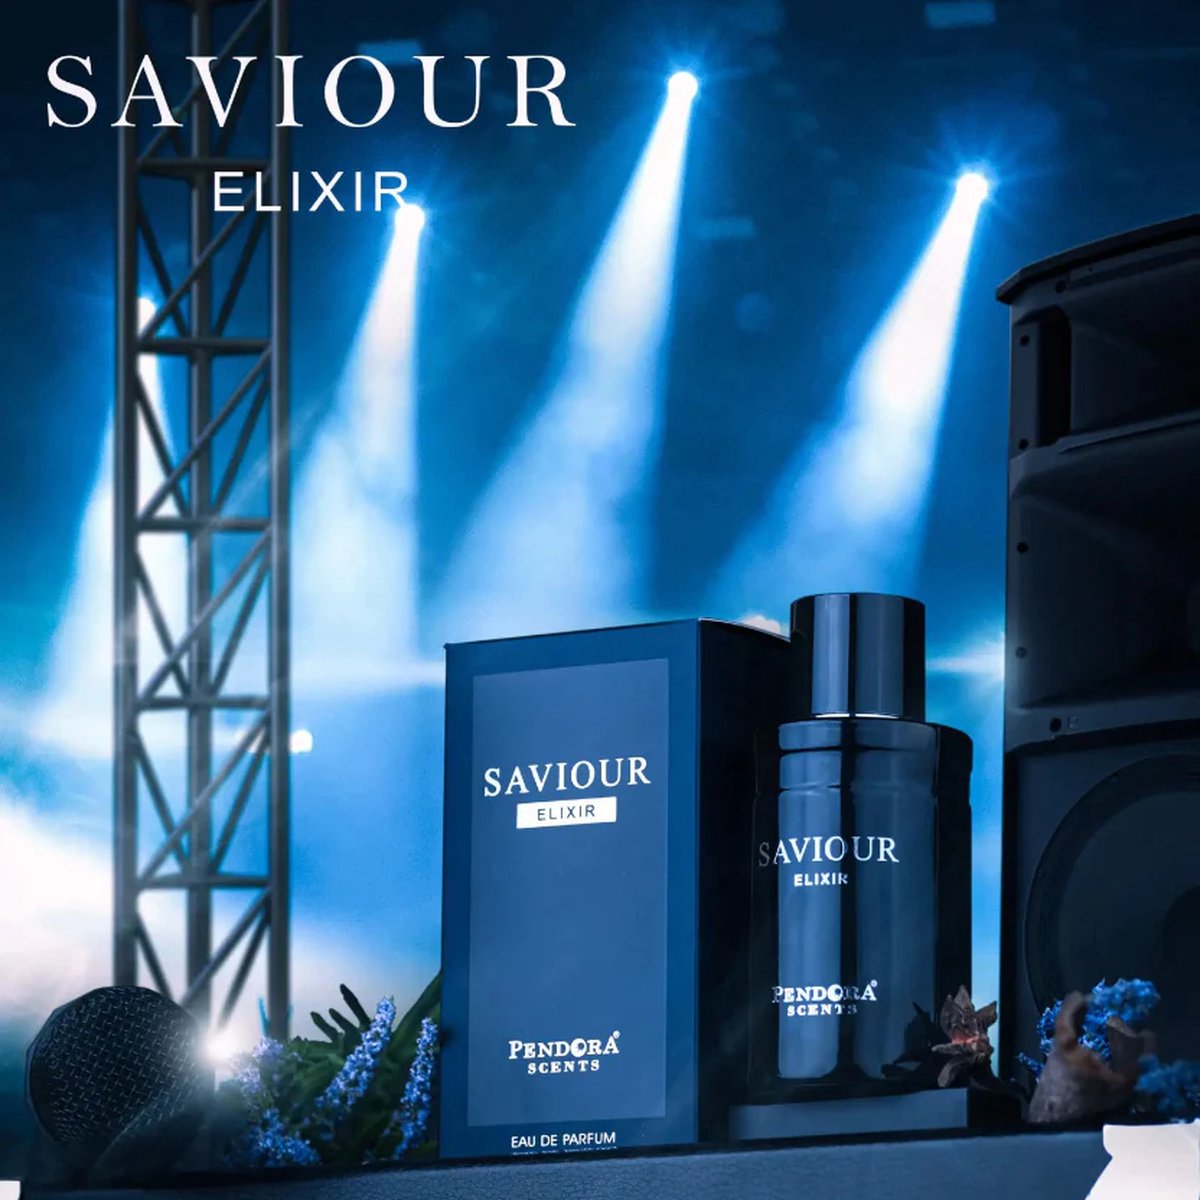 Saviour Elixir - Pendora Scents - Eau de Parfum - 100 ML - Dupe van Sauvage Elixir